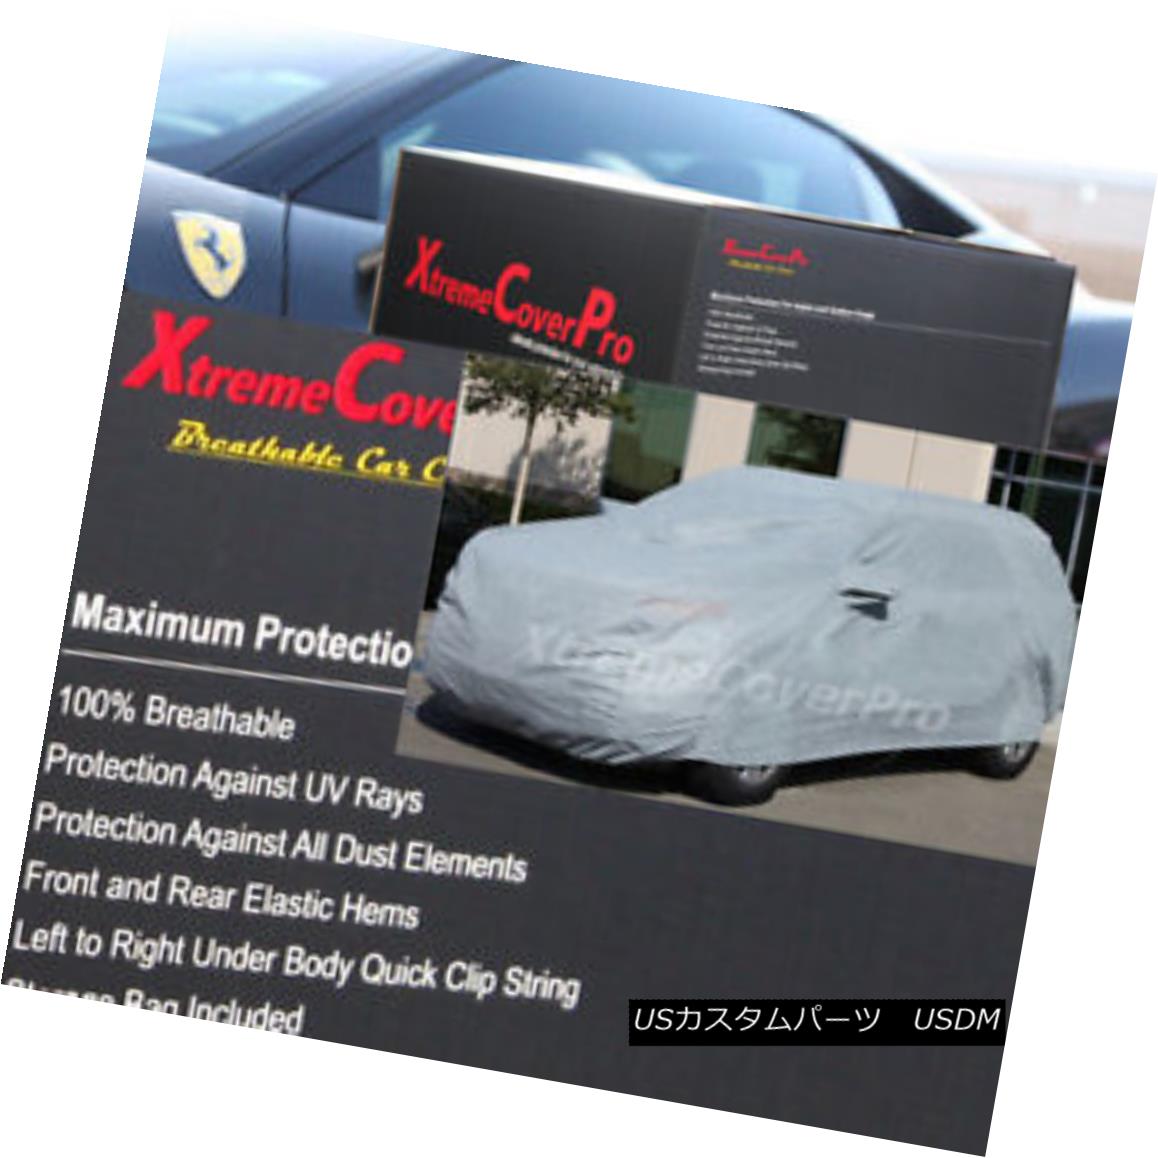 最高級のスーパー ギフト プレゼント ご褒美 2015 MAZDA CX-5 Breathable Car Cover w Mirror Pockets - Gray カーカバー CX-5通気性車カバー ミラーポケット付 グレー raion.shadrinsk.net raion.shadrinsk.net